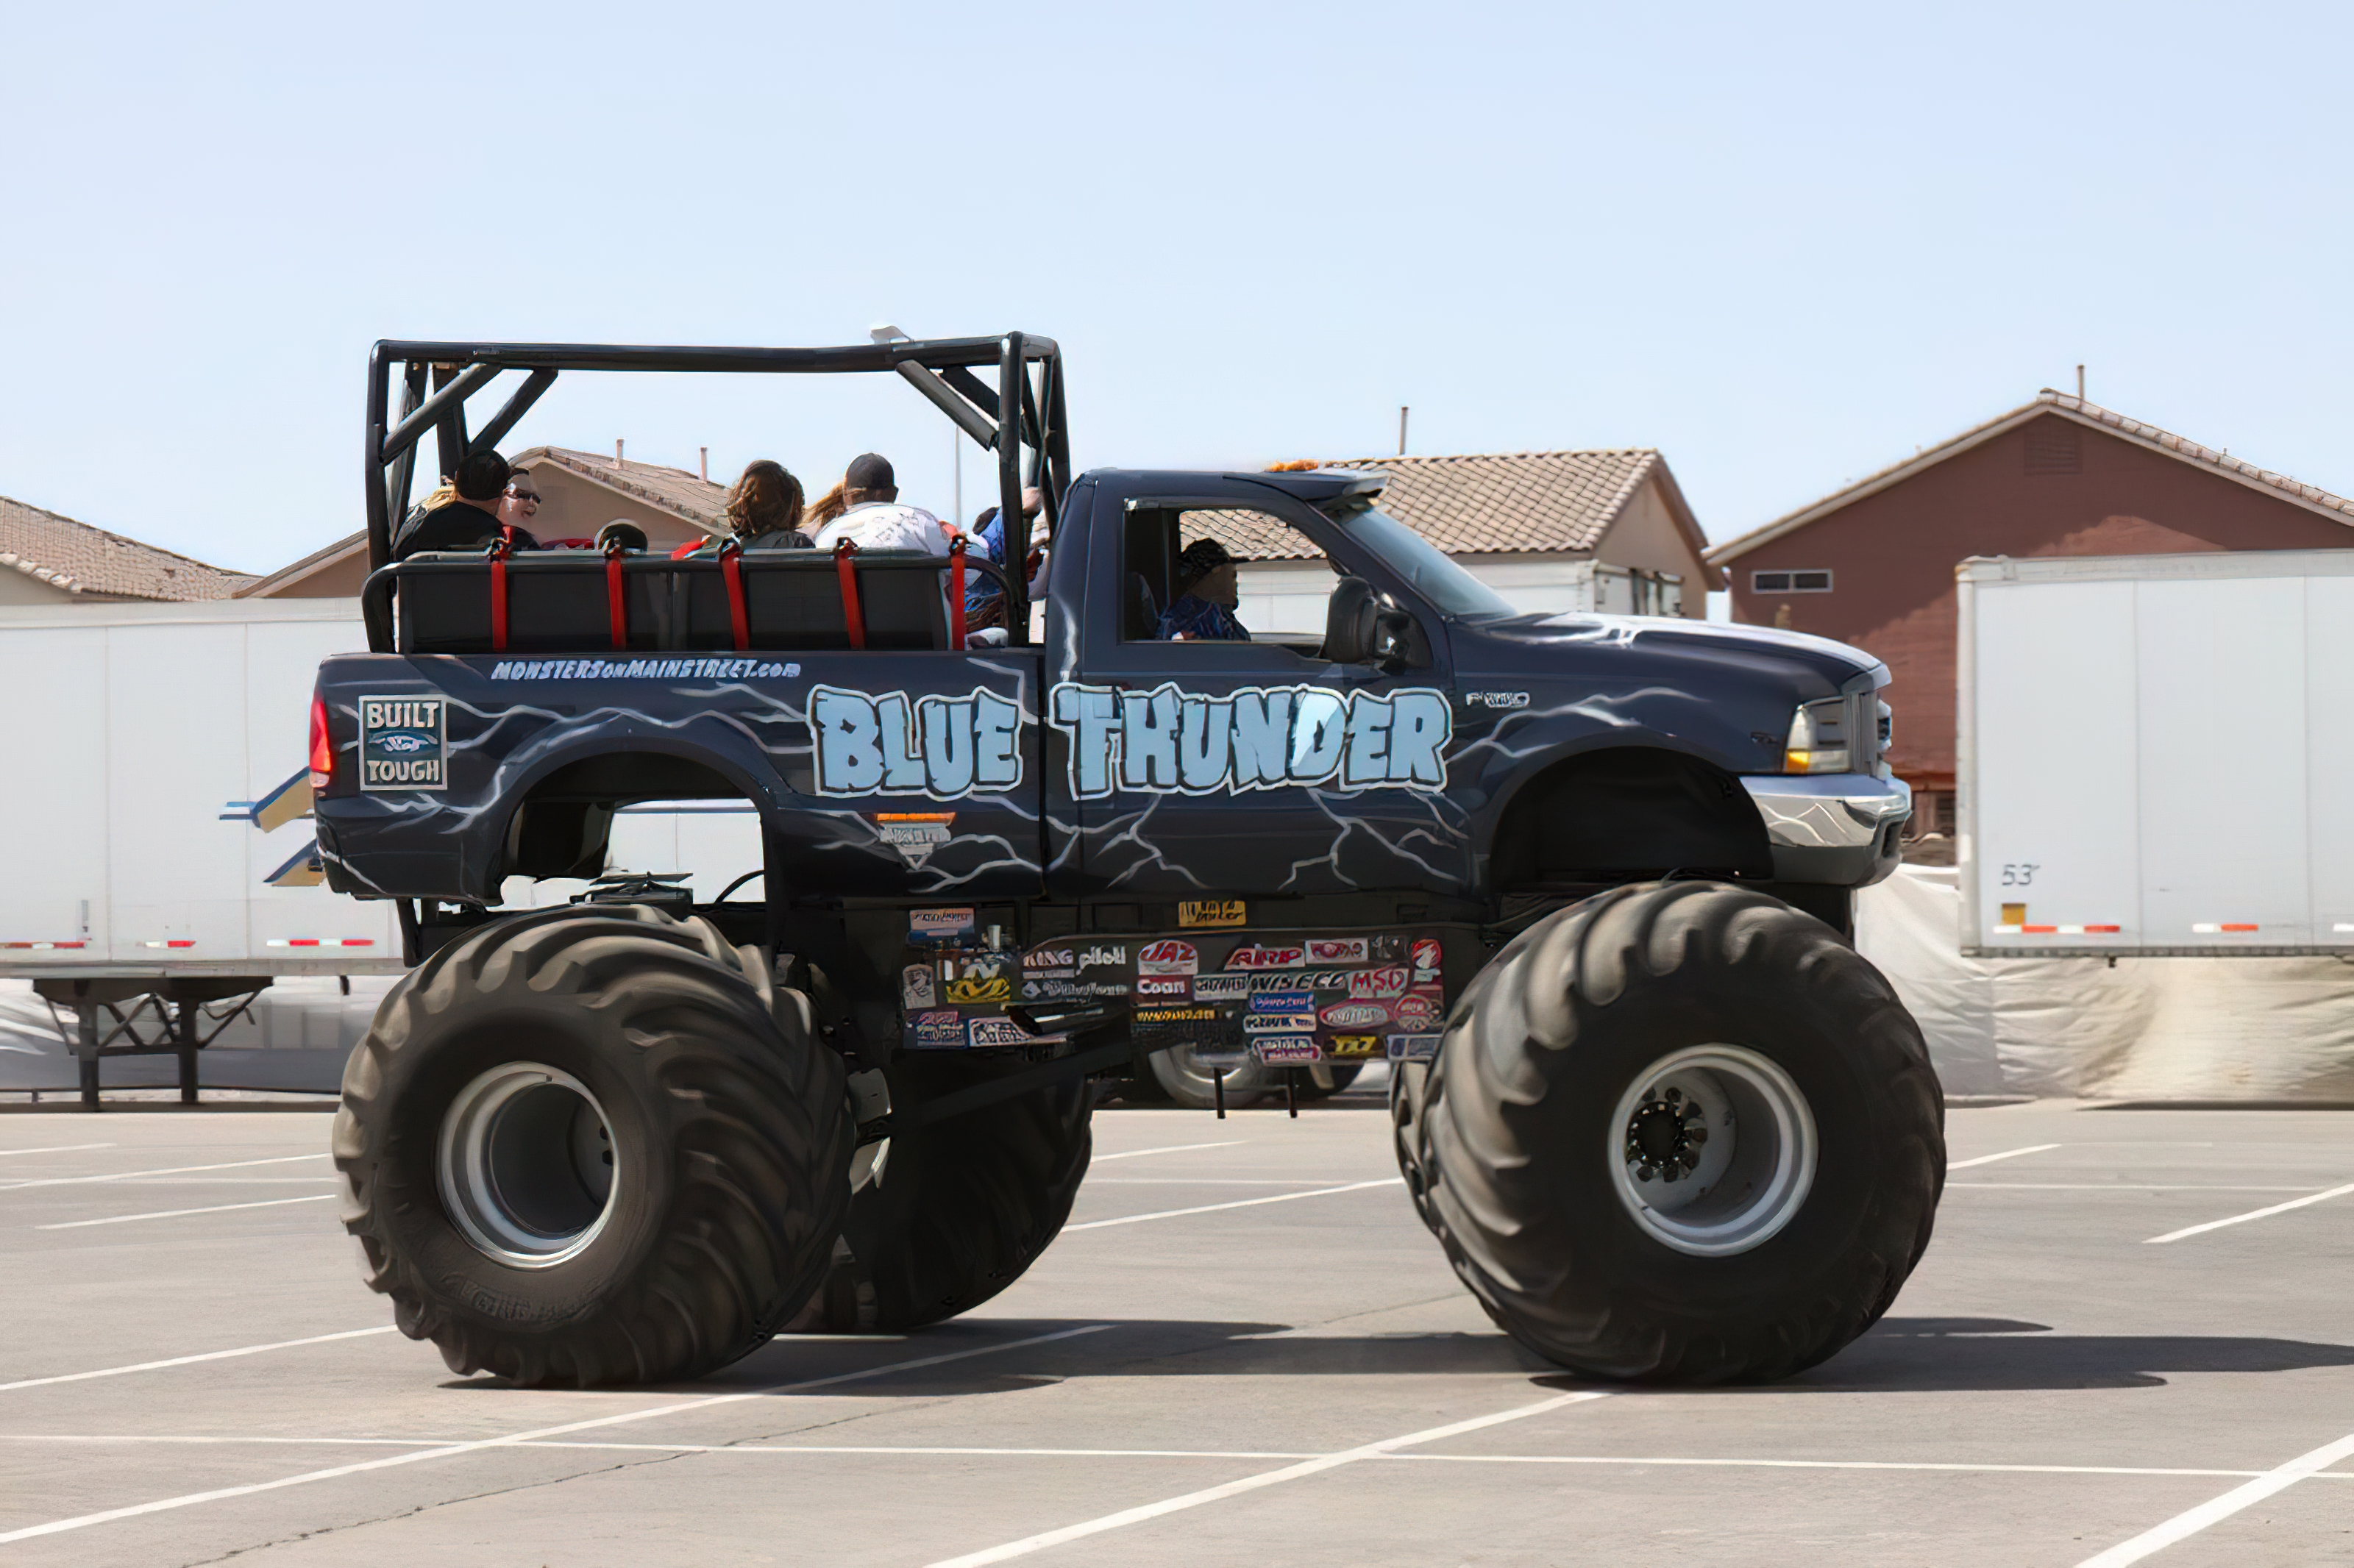 Blue Thunder Ride Truck Monster Trucks Wiki Fandom